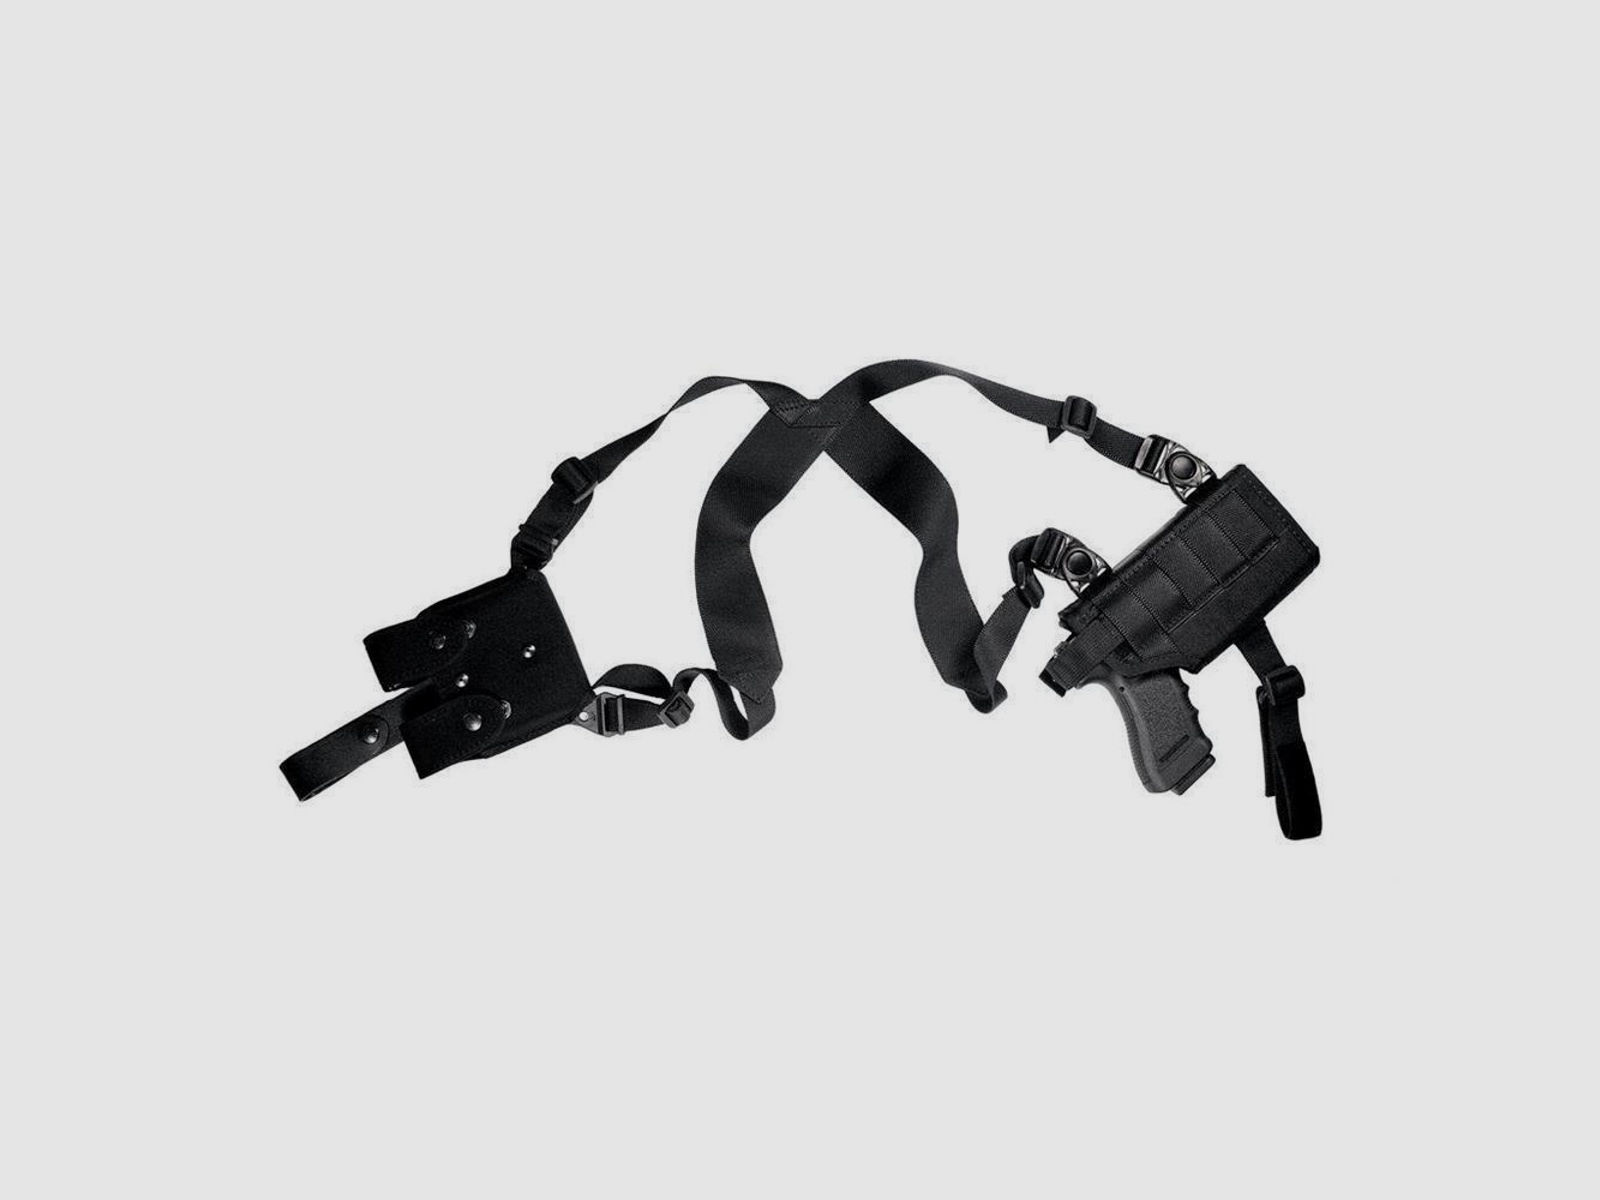 Schulterholster für Pistolen mit Taschenlampe/Laser Full Size / Large Auto Schwarz Rechtshänder